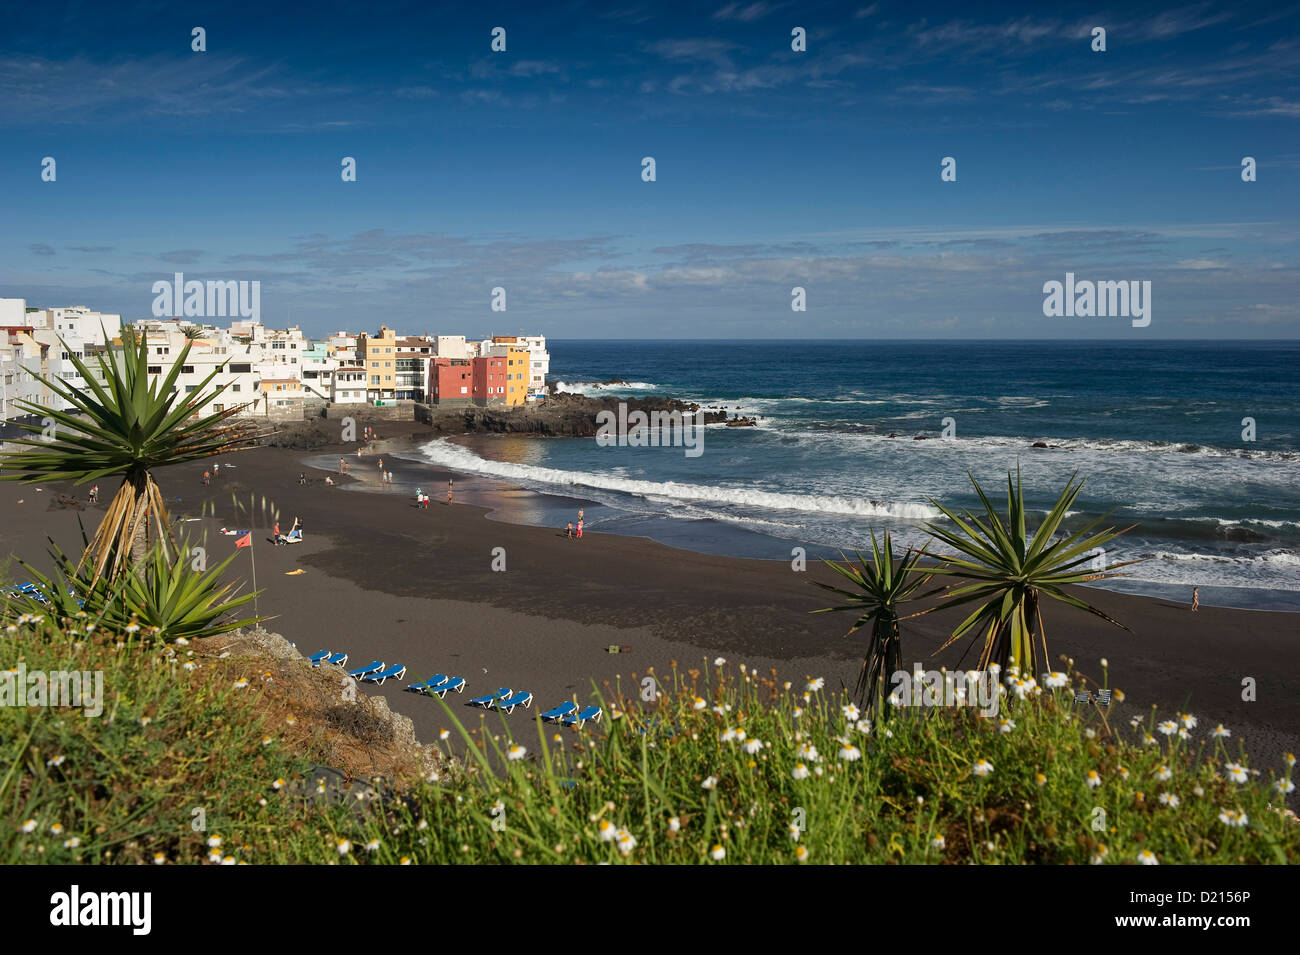 Avis de personnes sur la plage, Puerto de la Cruz, Tenerife, Canaries, Espagne, Europe Banque D'Images